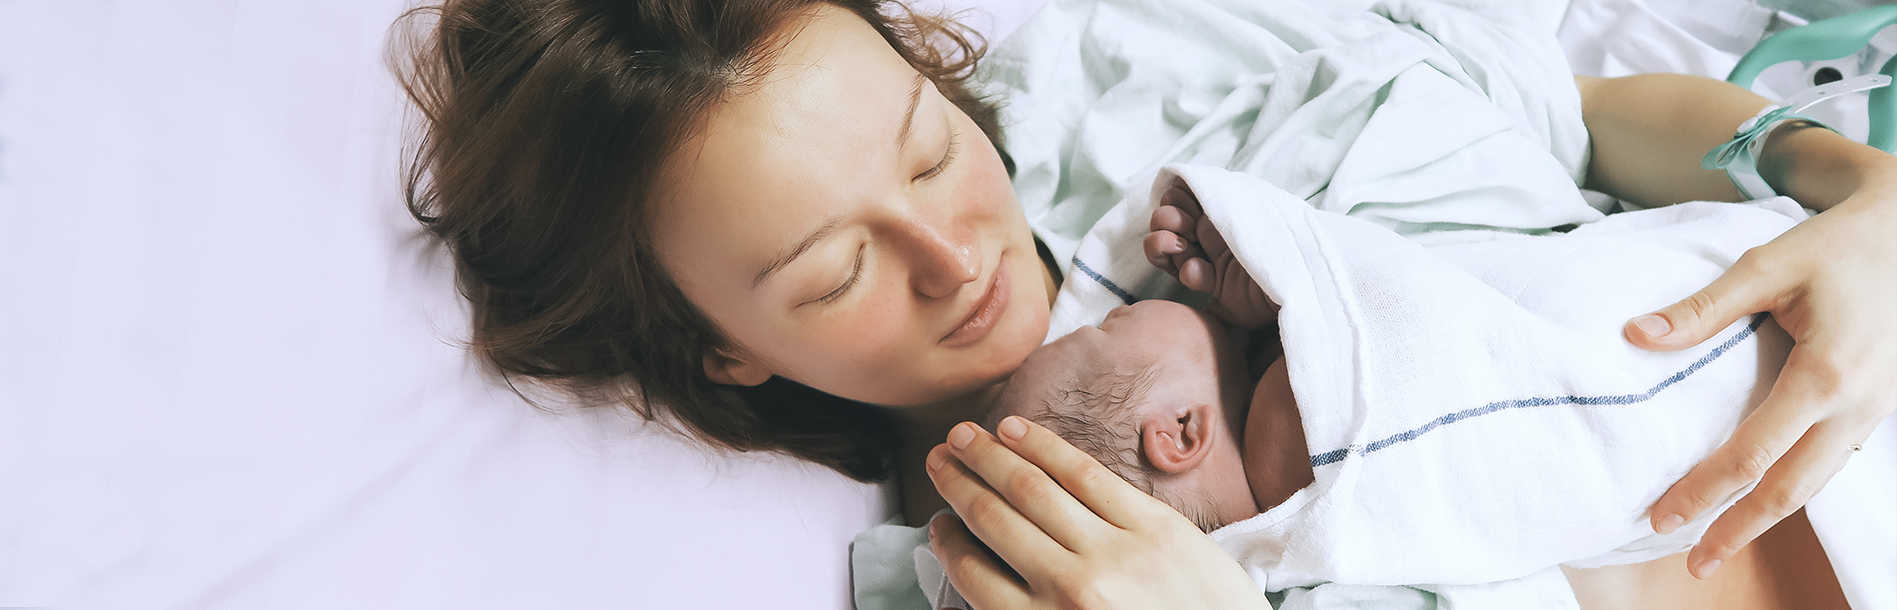 Hospital ou Maternidade: onde ter o seu bebê?